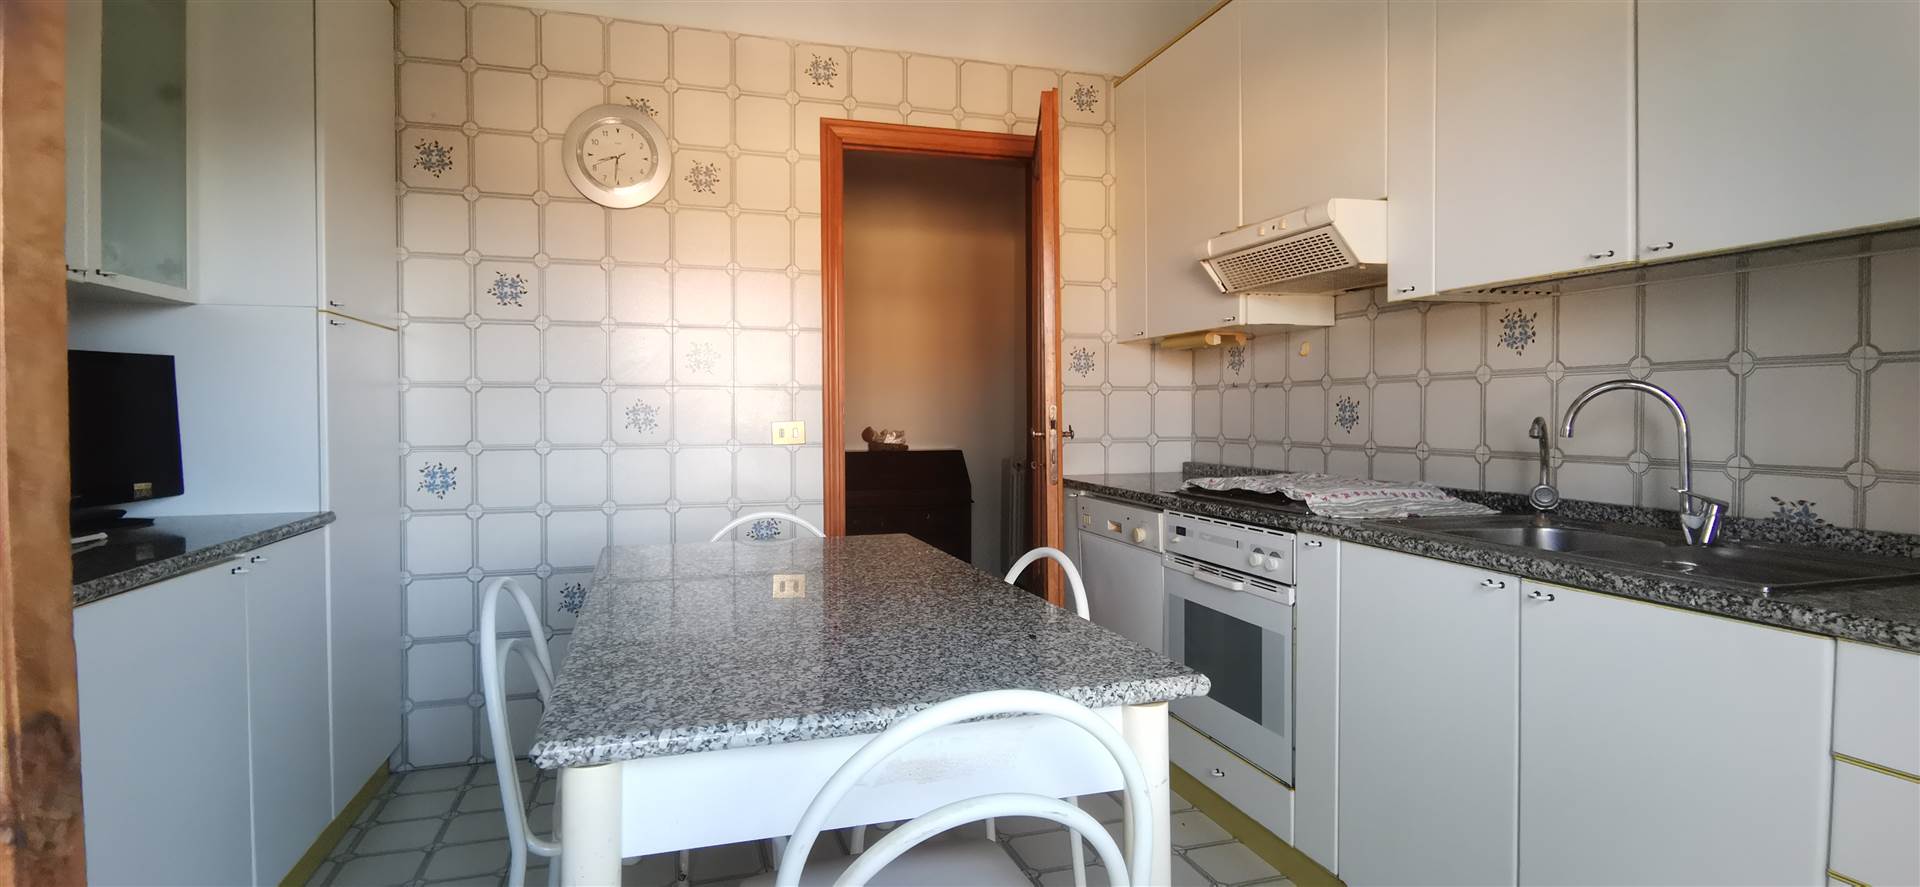 Appartamento in vendita a Chianciano Terme, 4 locali, zona Località: CHIANCIANO TERME, prezzo € 85.000 | PortaleAgenzieImmobiliari.it